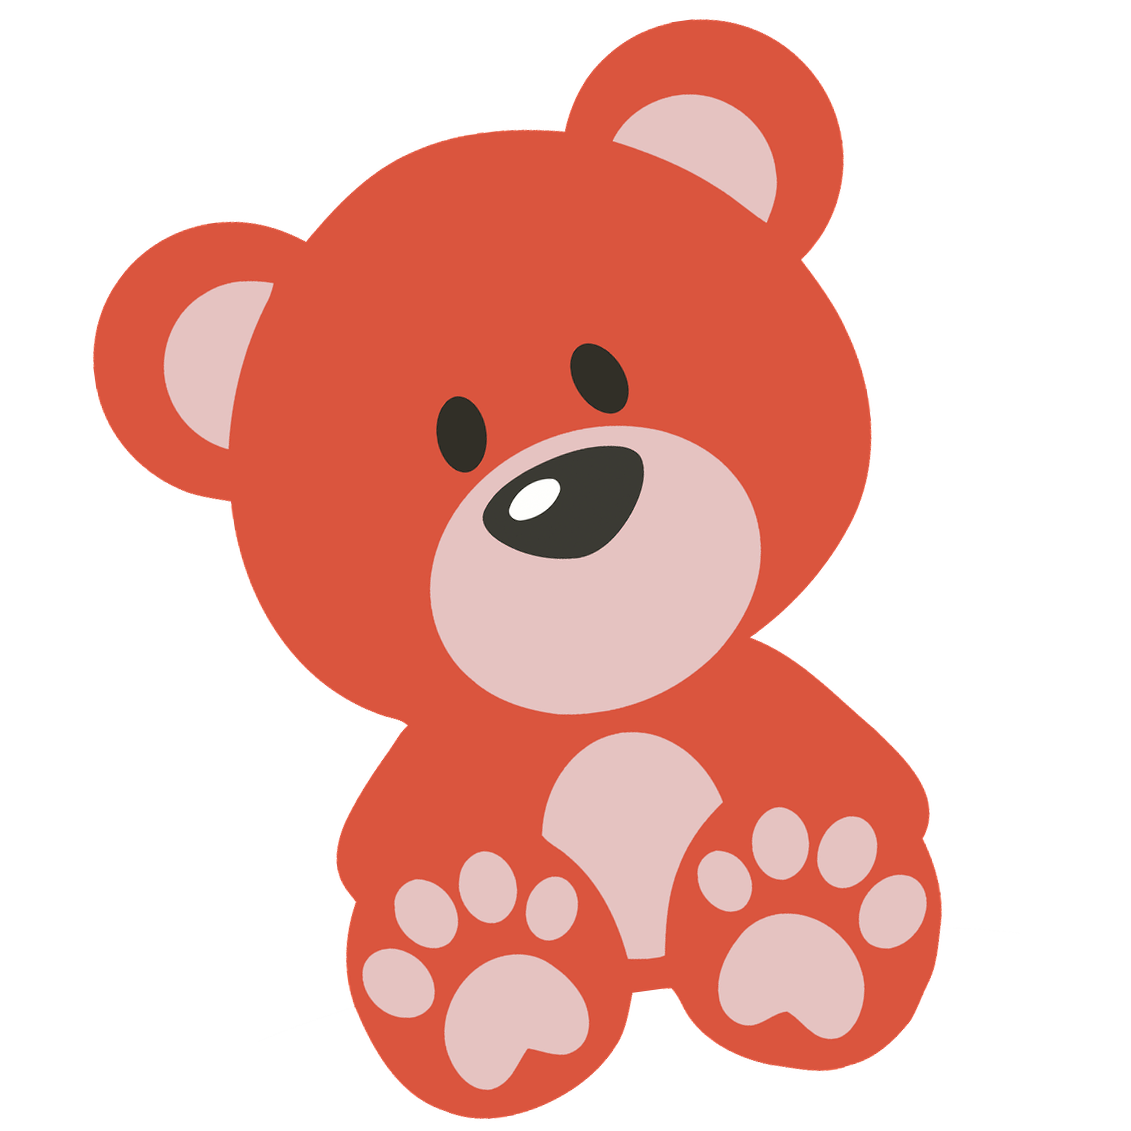 teddy bear clipart,teddy logo